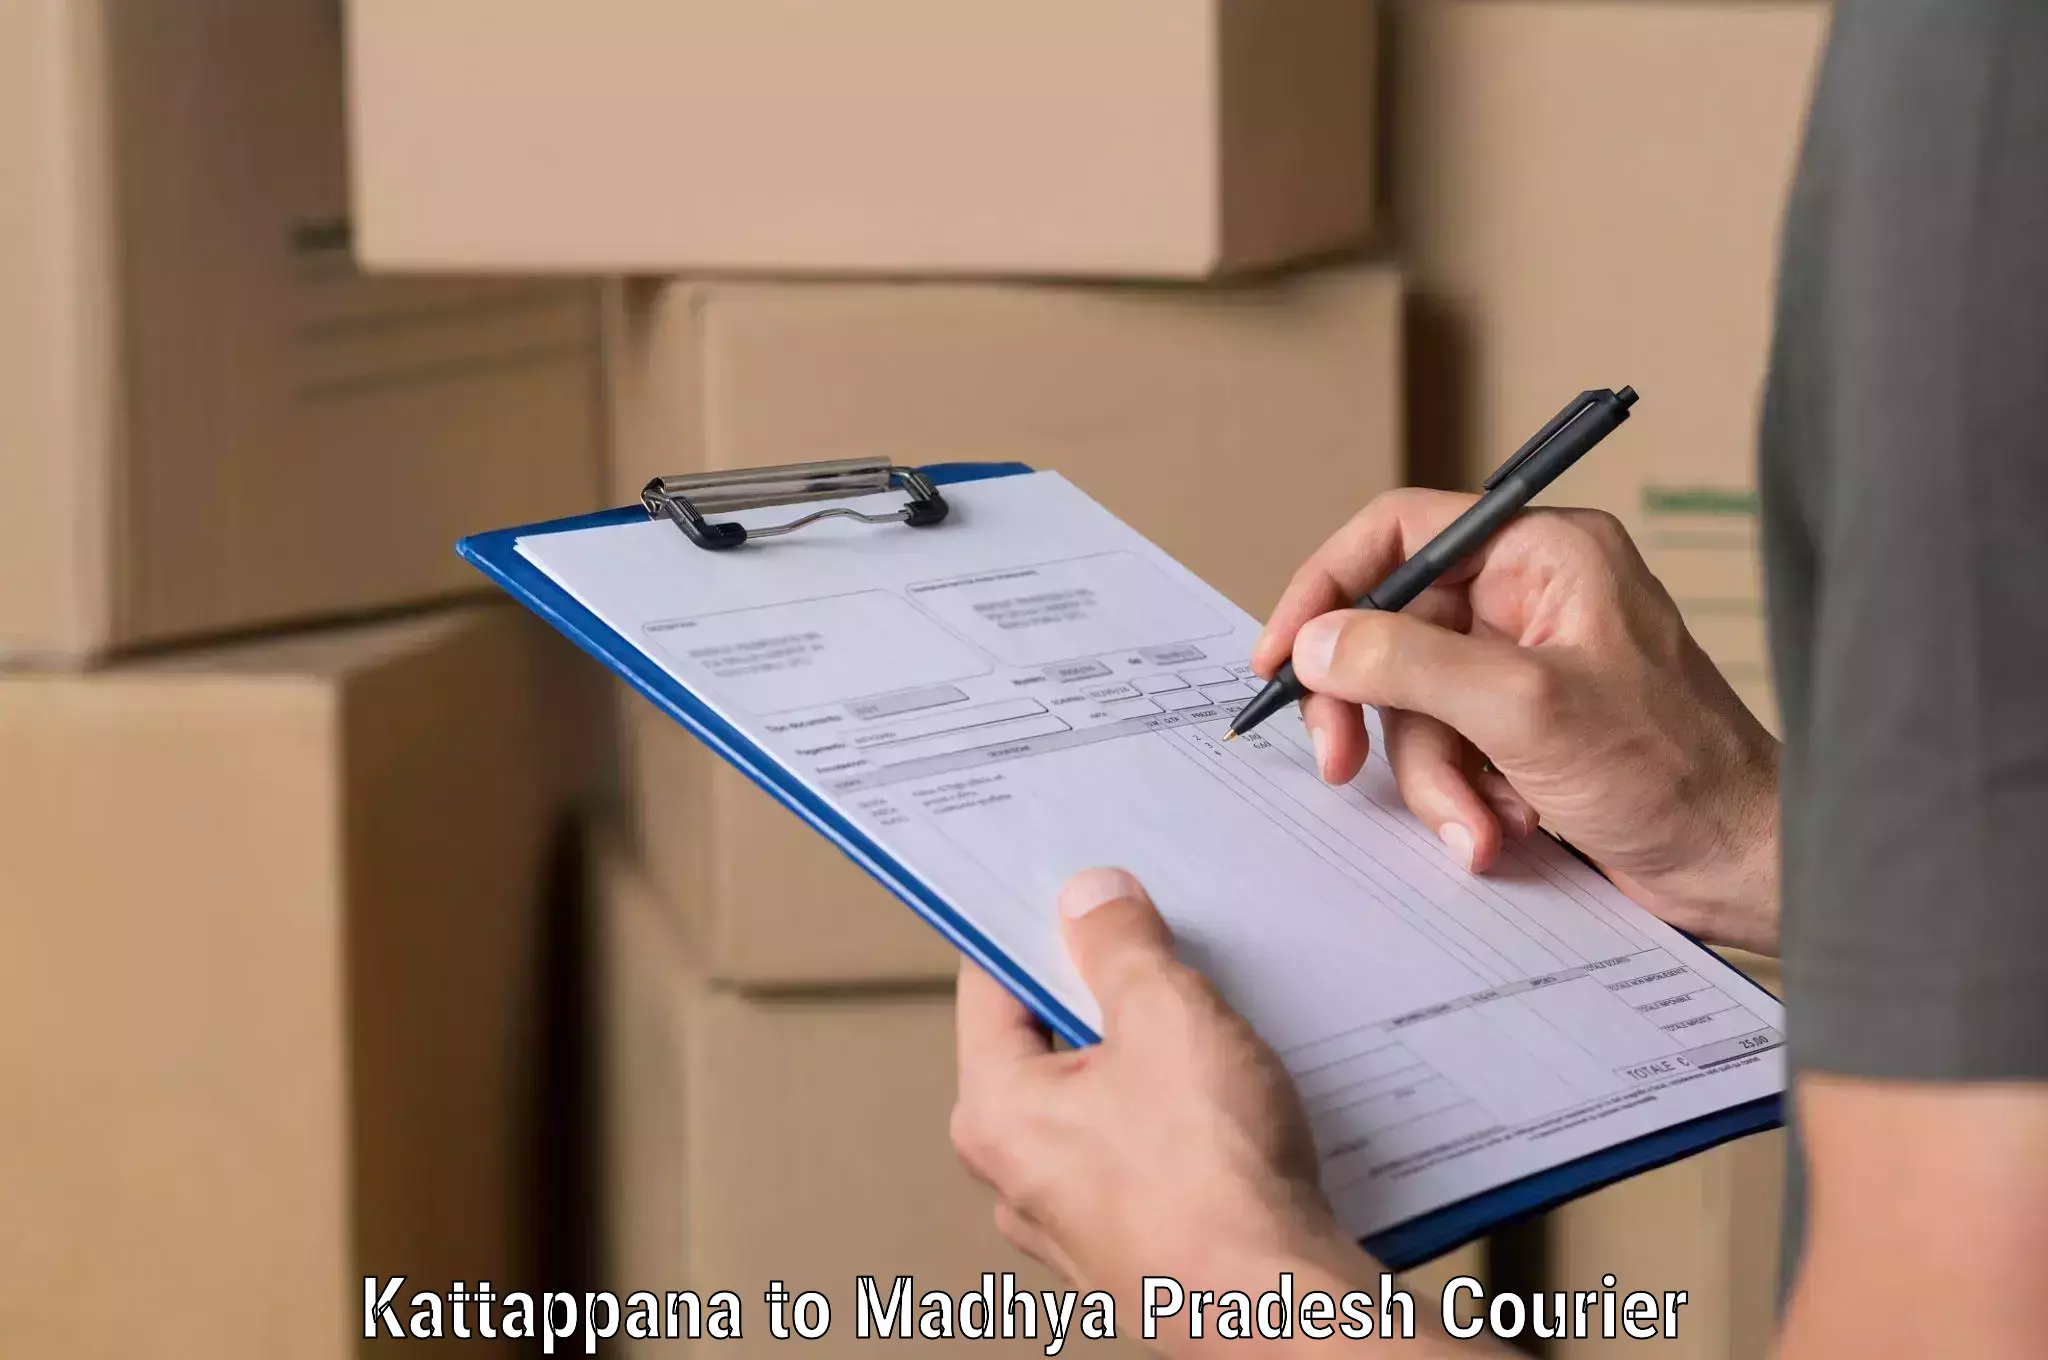 Global logistics network Kattappana to Manawar